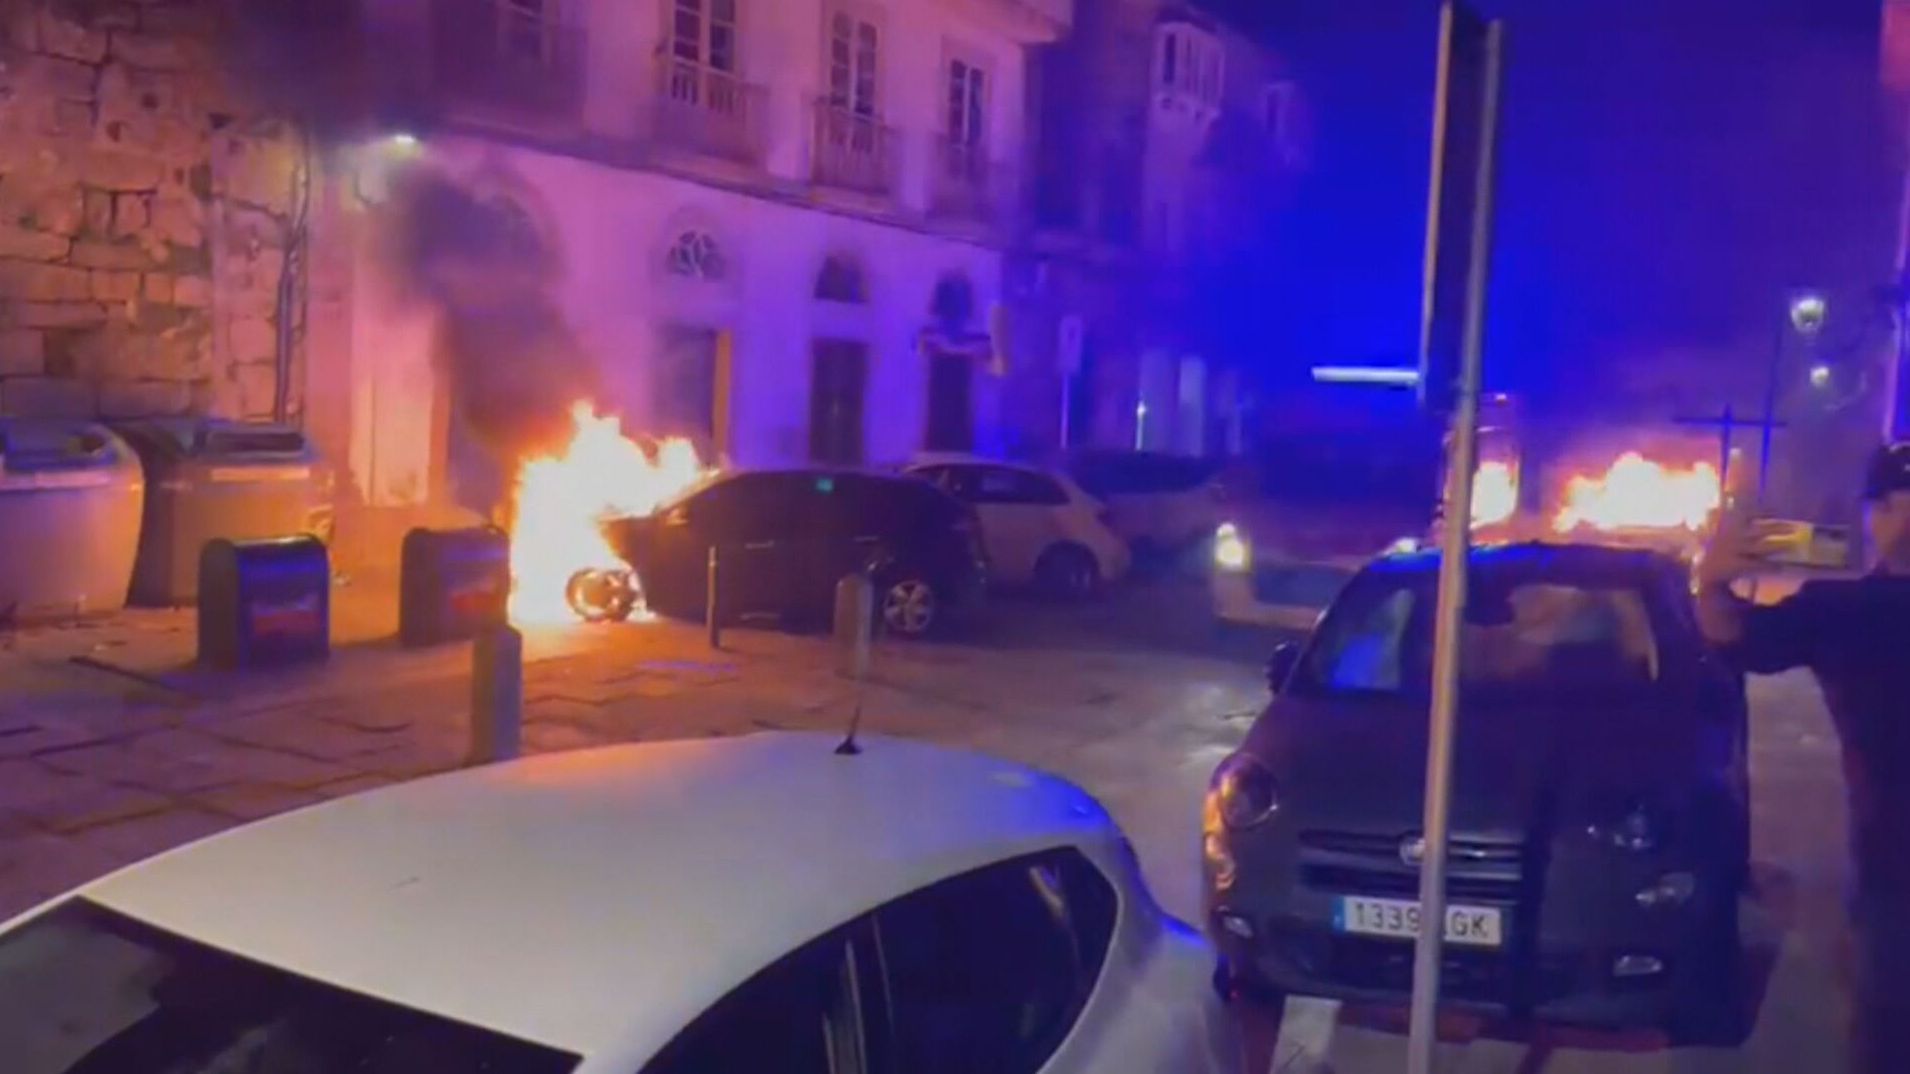 Noche de pánico en Tui, Pontevedra, tras la quema de una veintena de coches